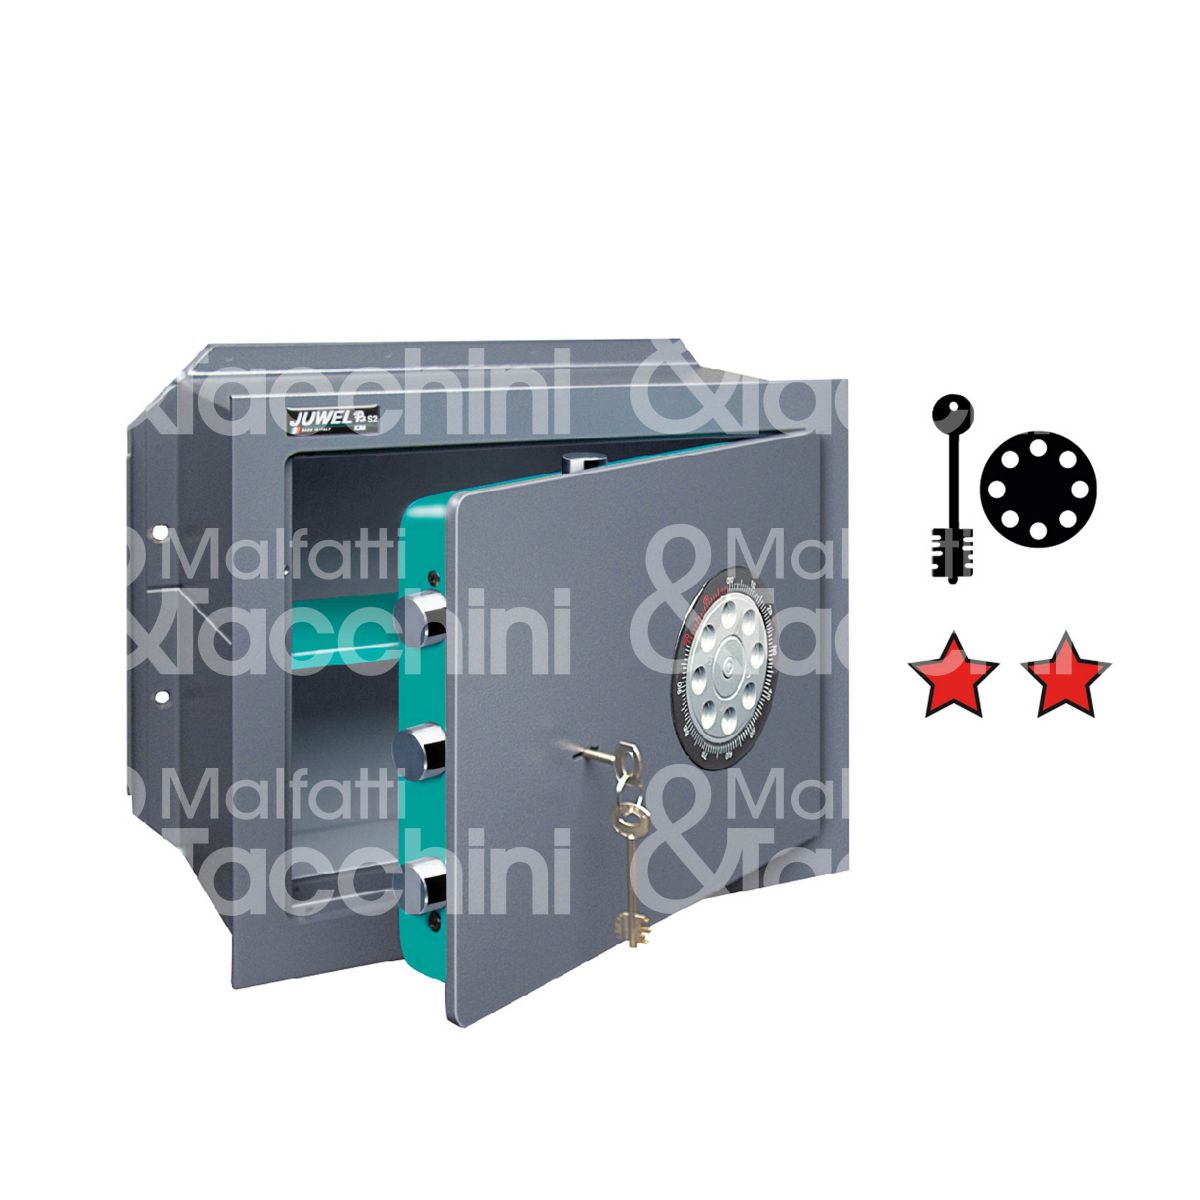 Juwel 4884 cassaforte verticale a chiave piÙ combinazione a disco da murare  l 460 x h 510 x p 245 n° catenacci 3 + 2 MALFATTI&TACCHINI GROUP